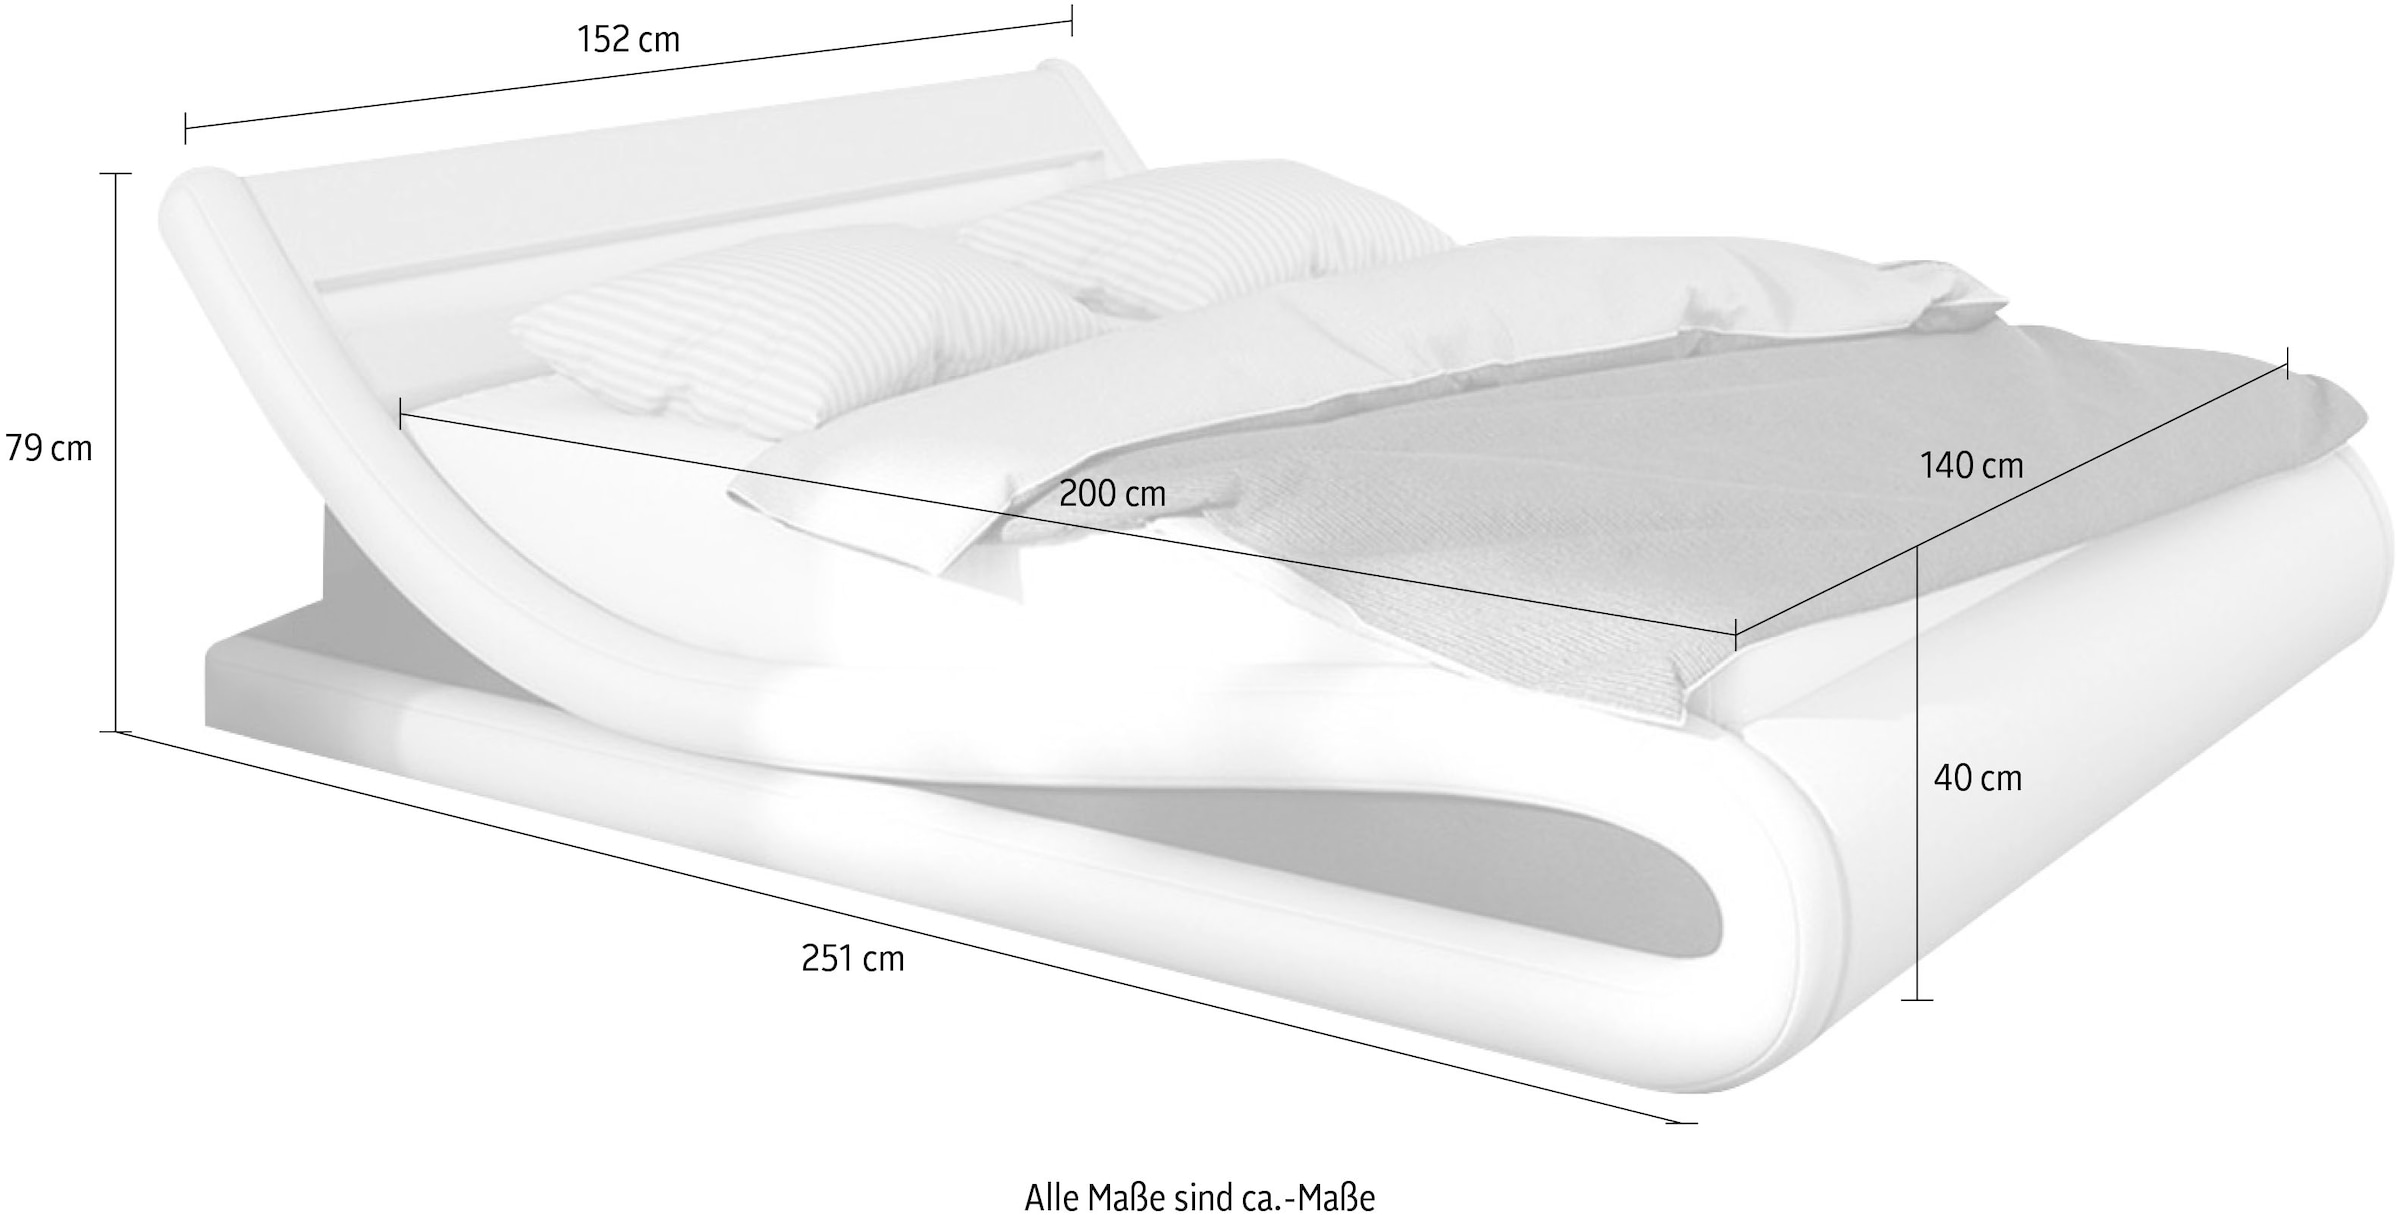 SalesFever Polsterbett, mit LED-Beleuchtung, Kunstleder, Design Bett in moderner Form